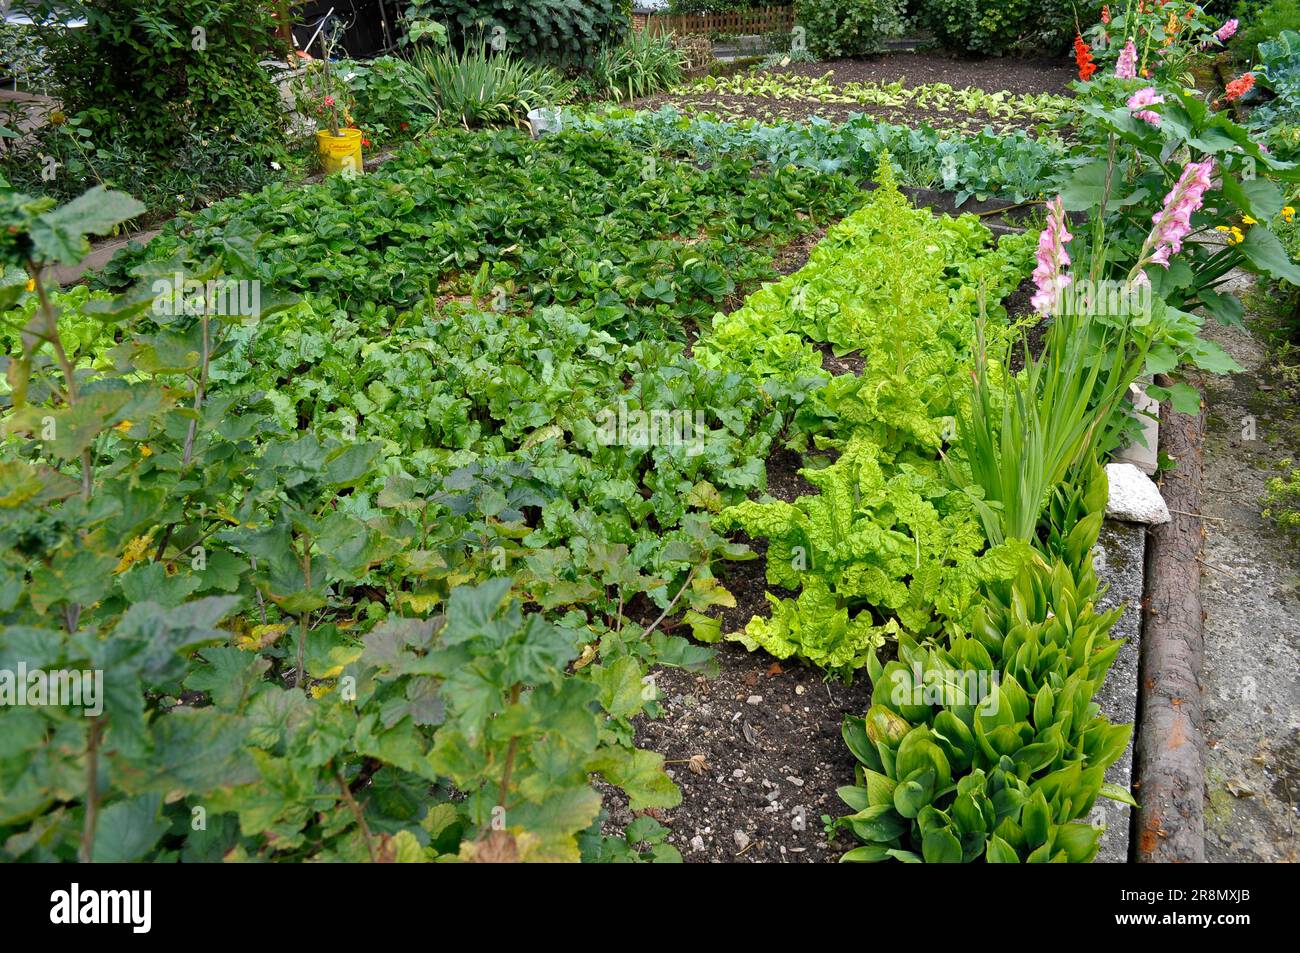 Farm garden, salad and vegetable garden Stock Photo